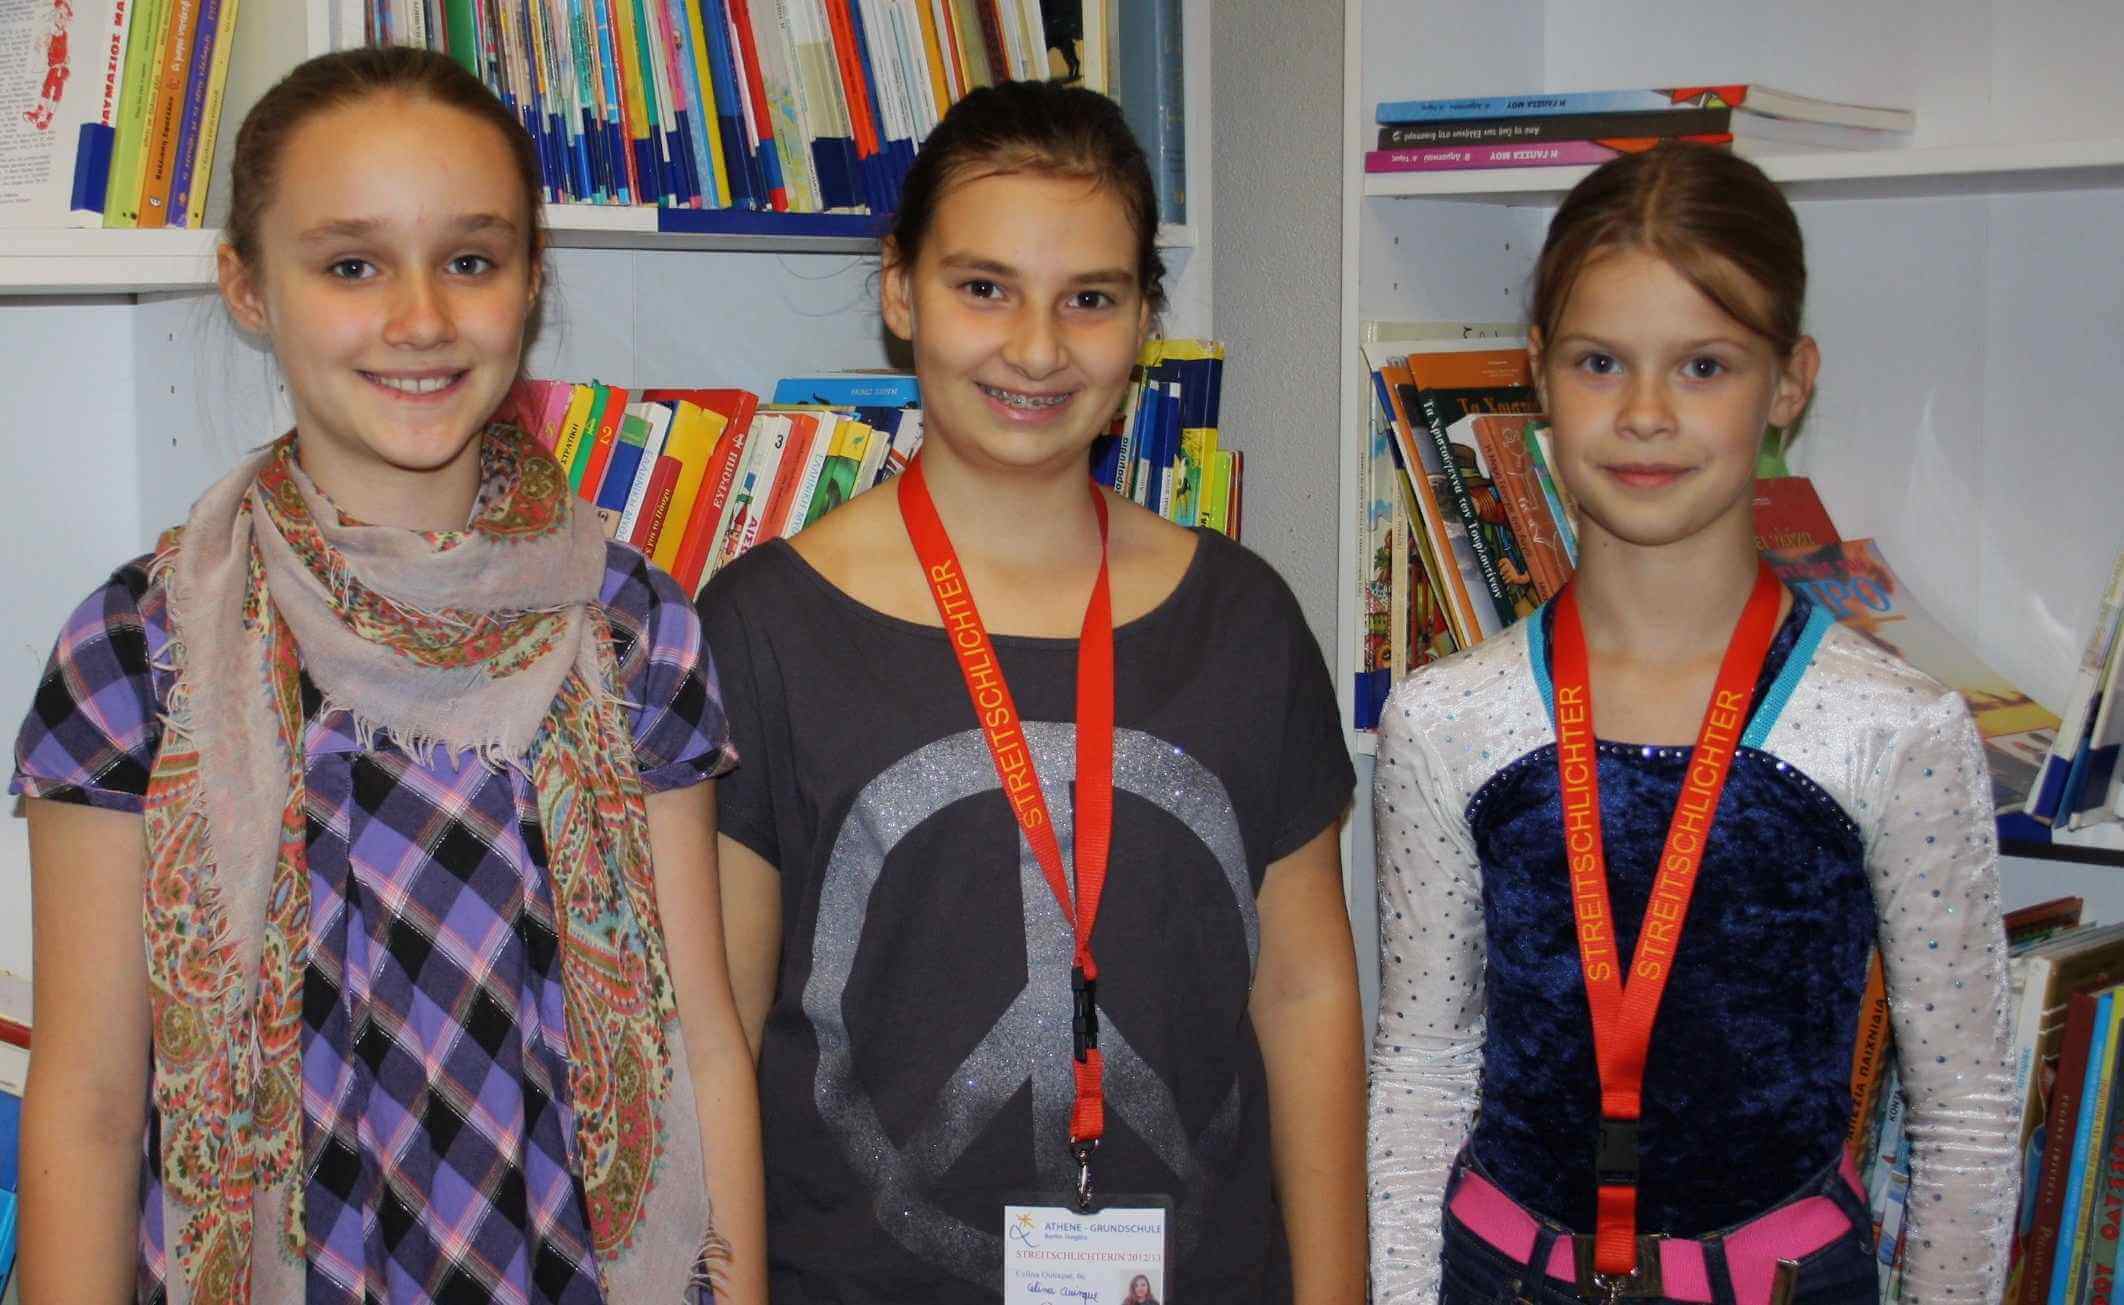 Schulrundgang mit Kennern: Tag der offenen Tür an der Athene-Grundschule